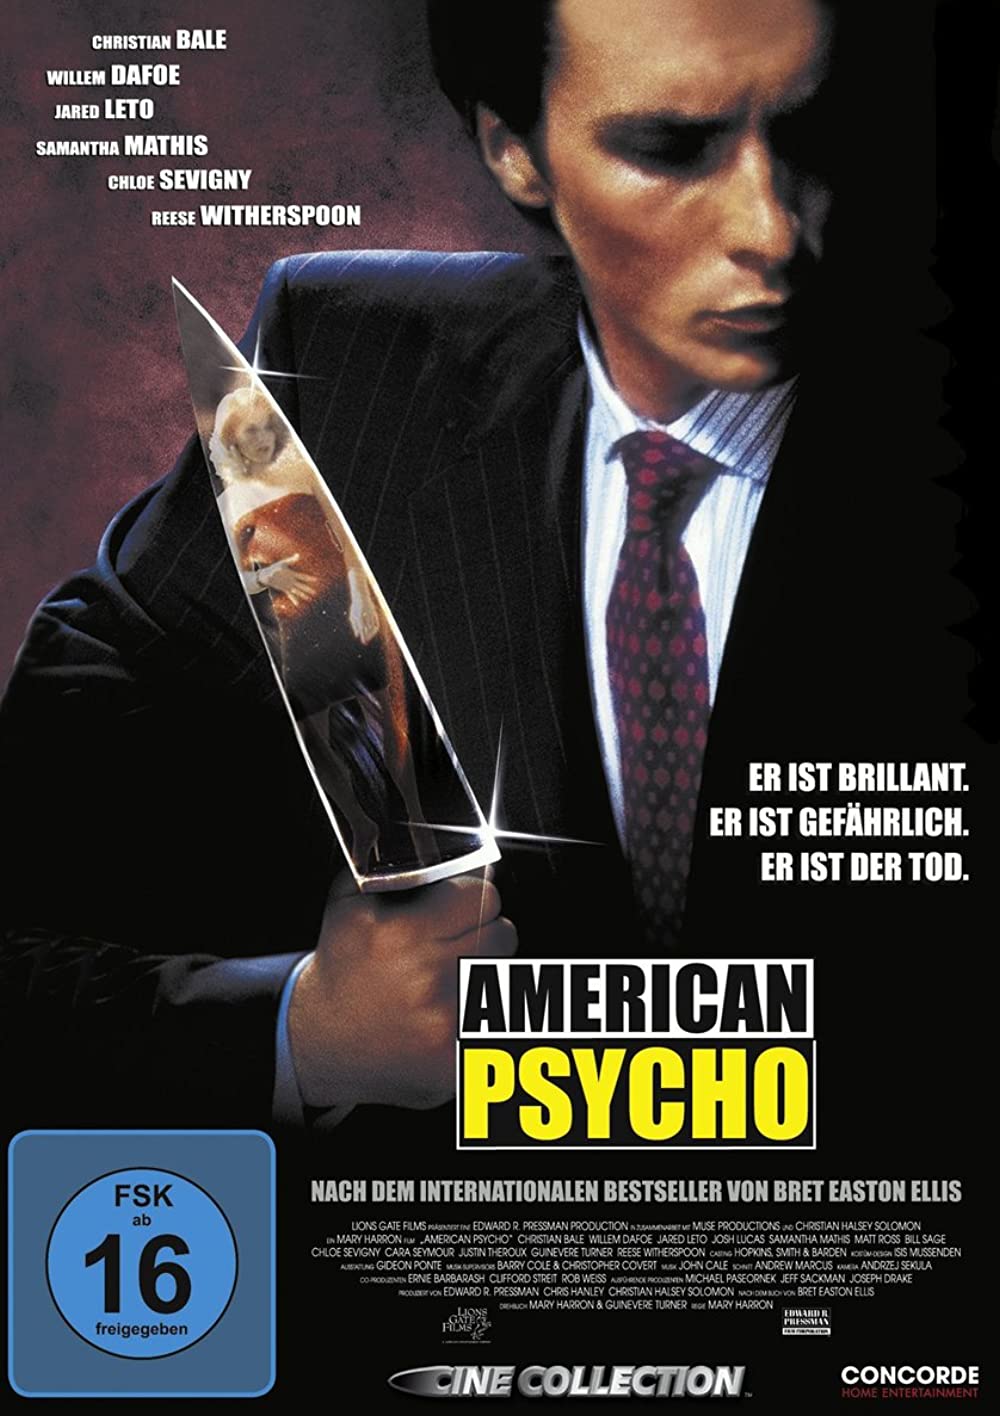 Filmbeschreibung zu American Psycho (OV)